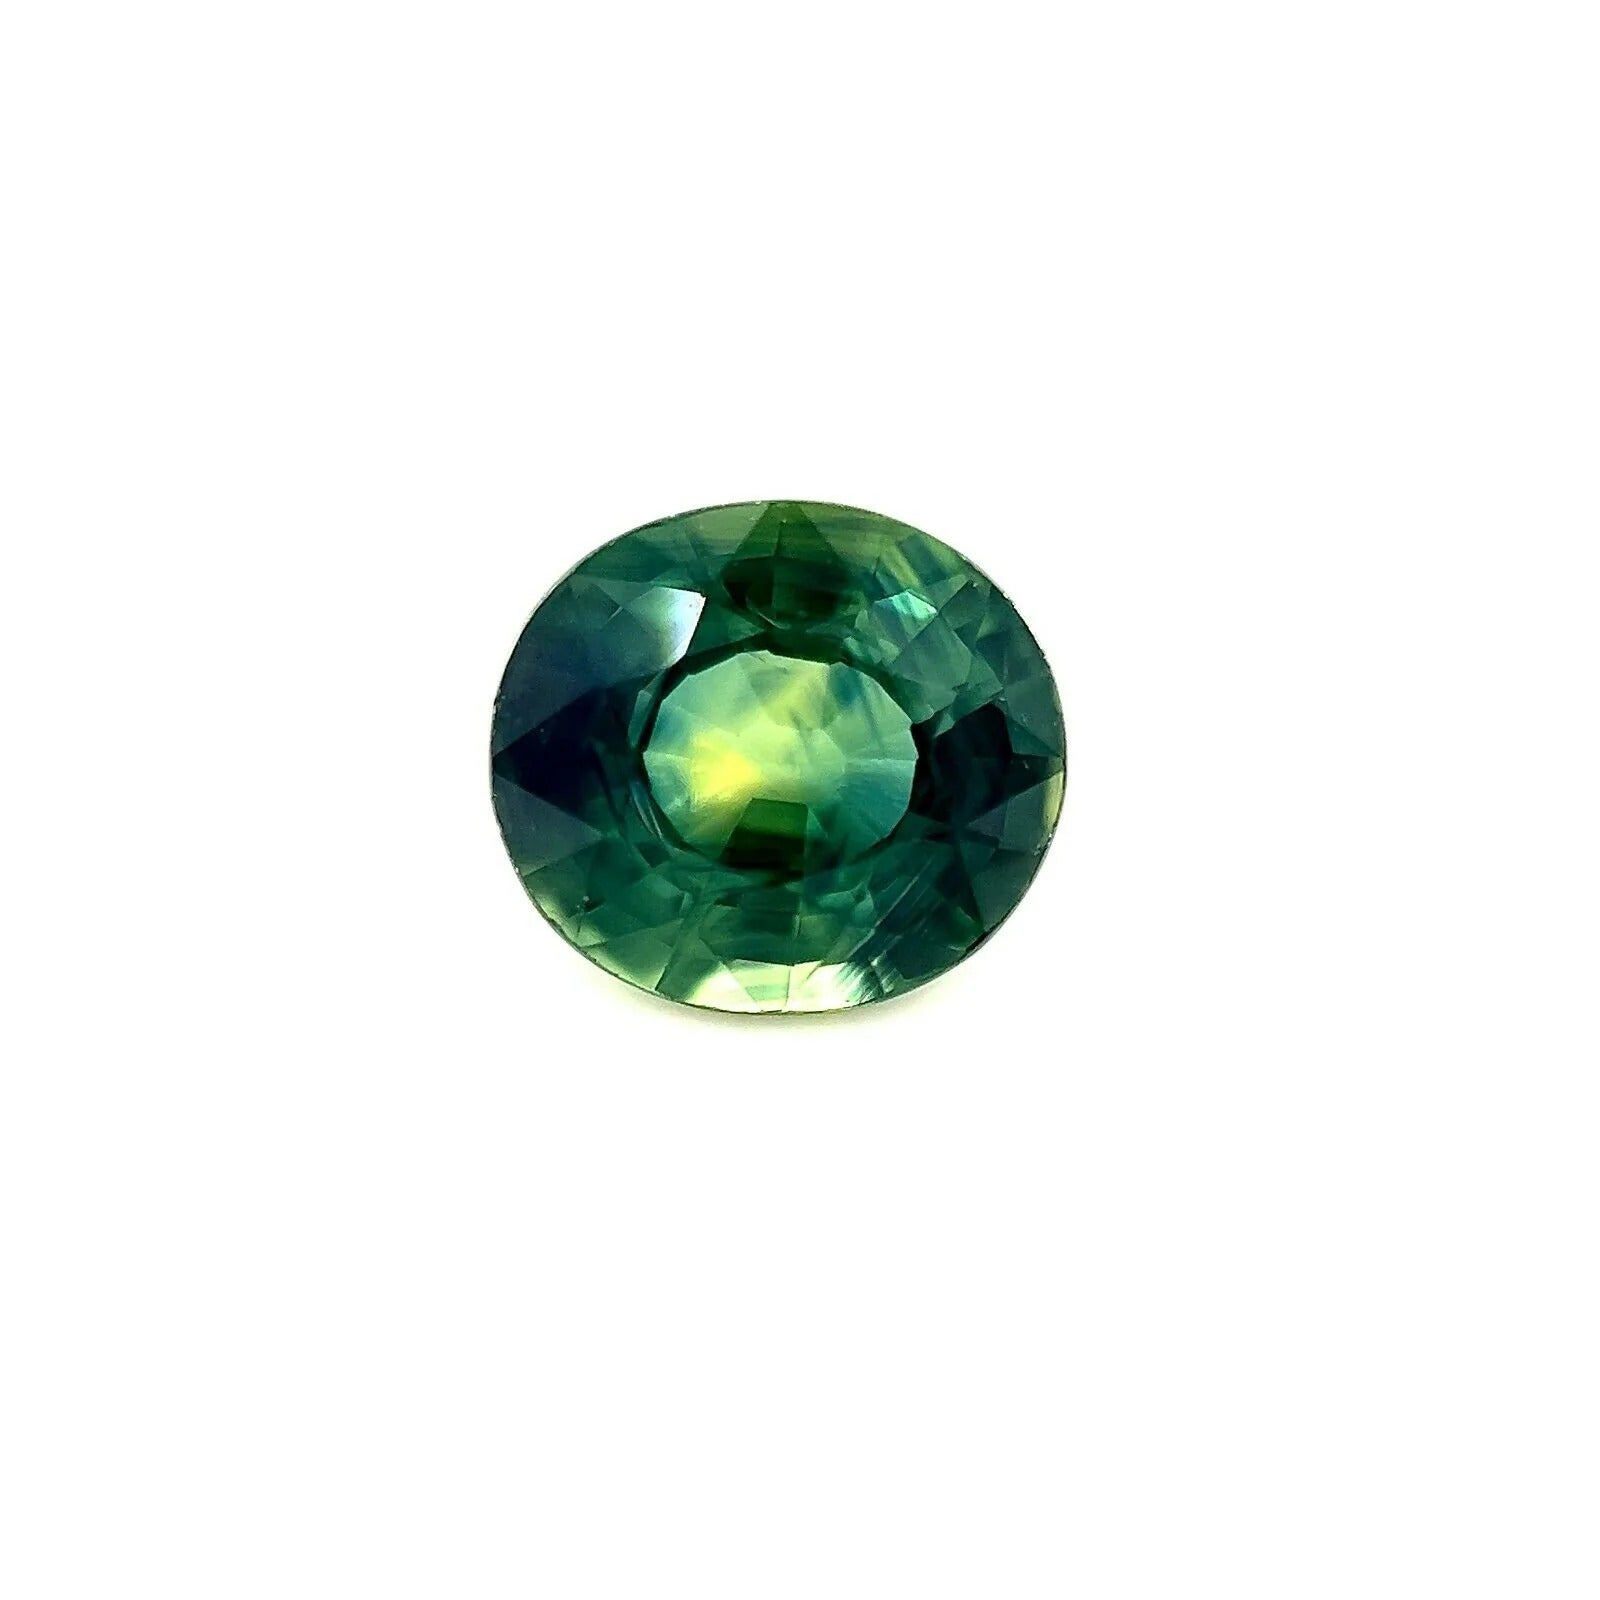 Saphir australien bleu vert sarcelle jaune taille ovale de 1,36 carat, pierre précieuse rare en vente